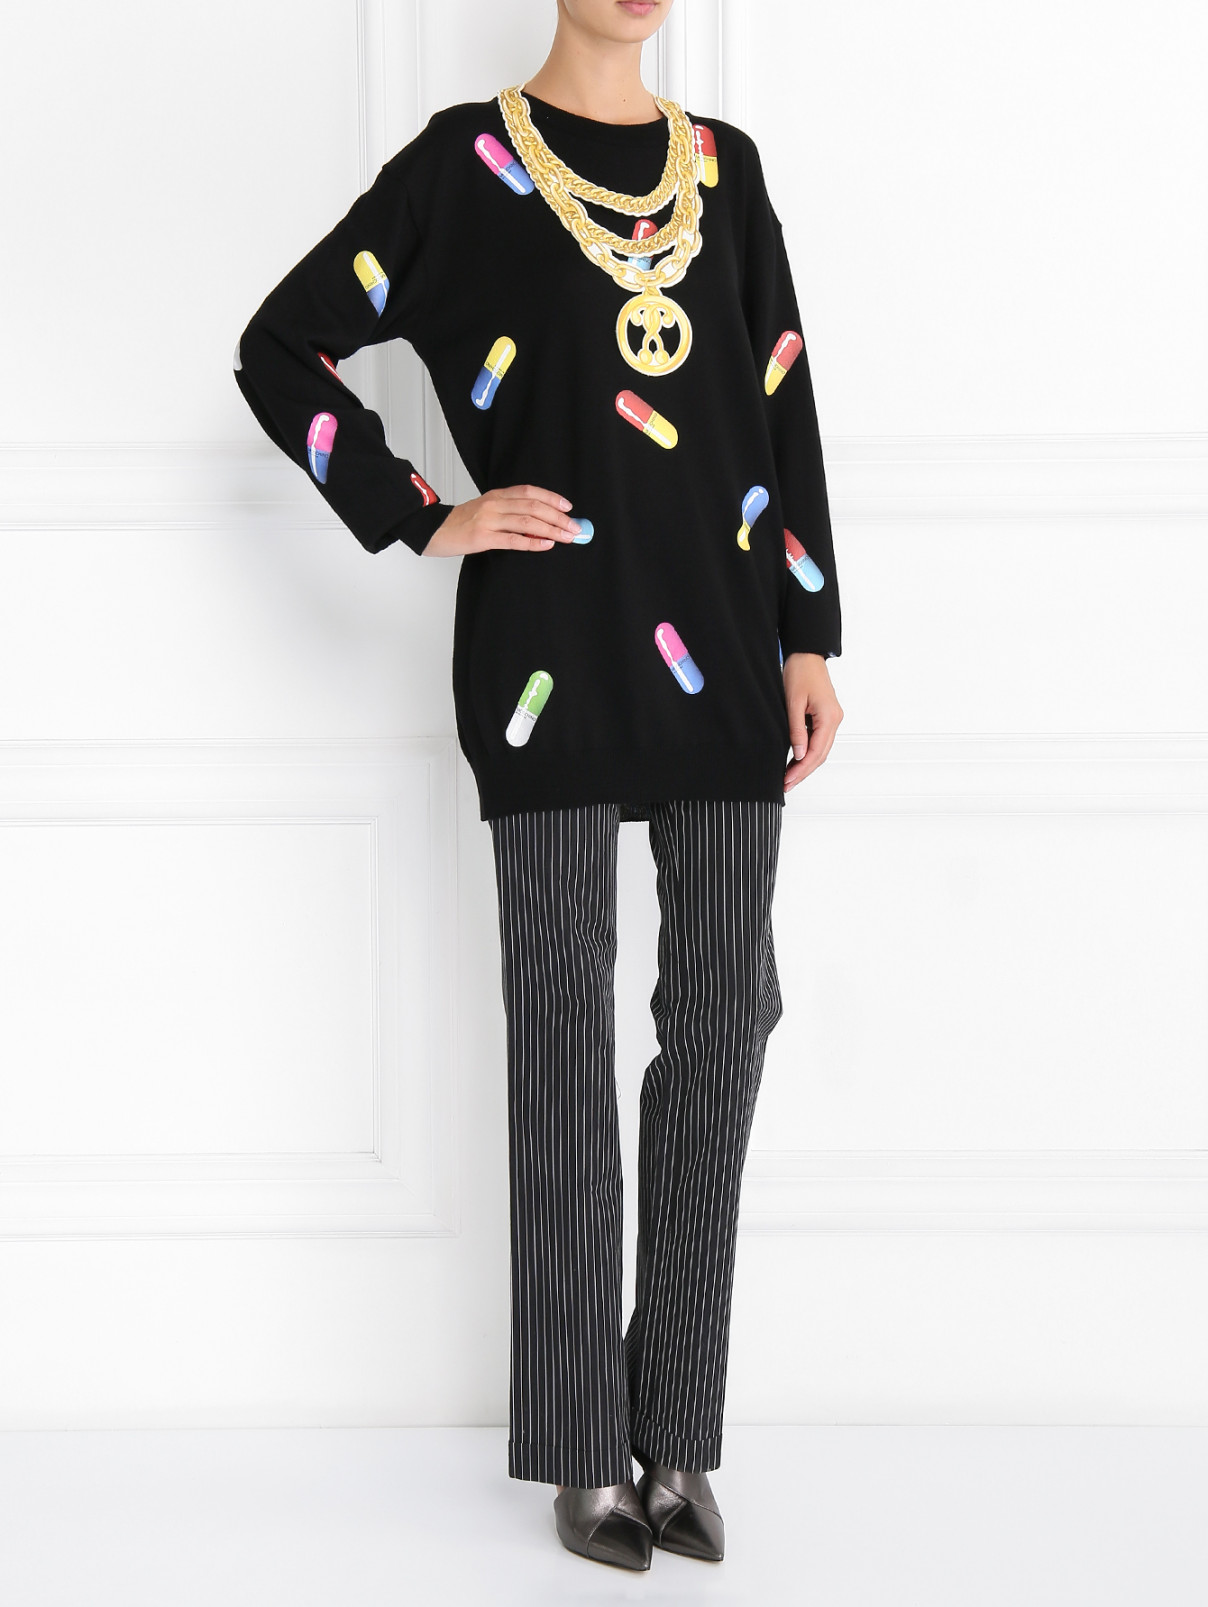 Джемпер из шерсти с принтом Moschino Couture  –  Модель Общий вид  – Цвет:  Черный